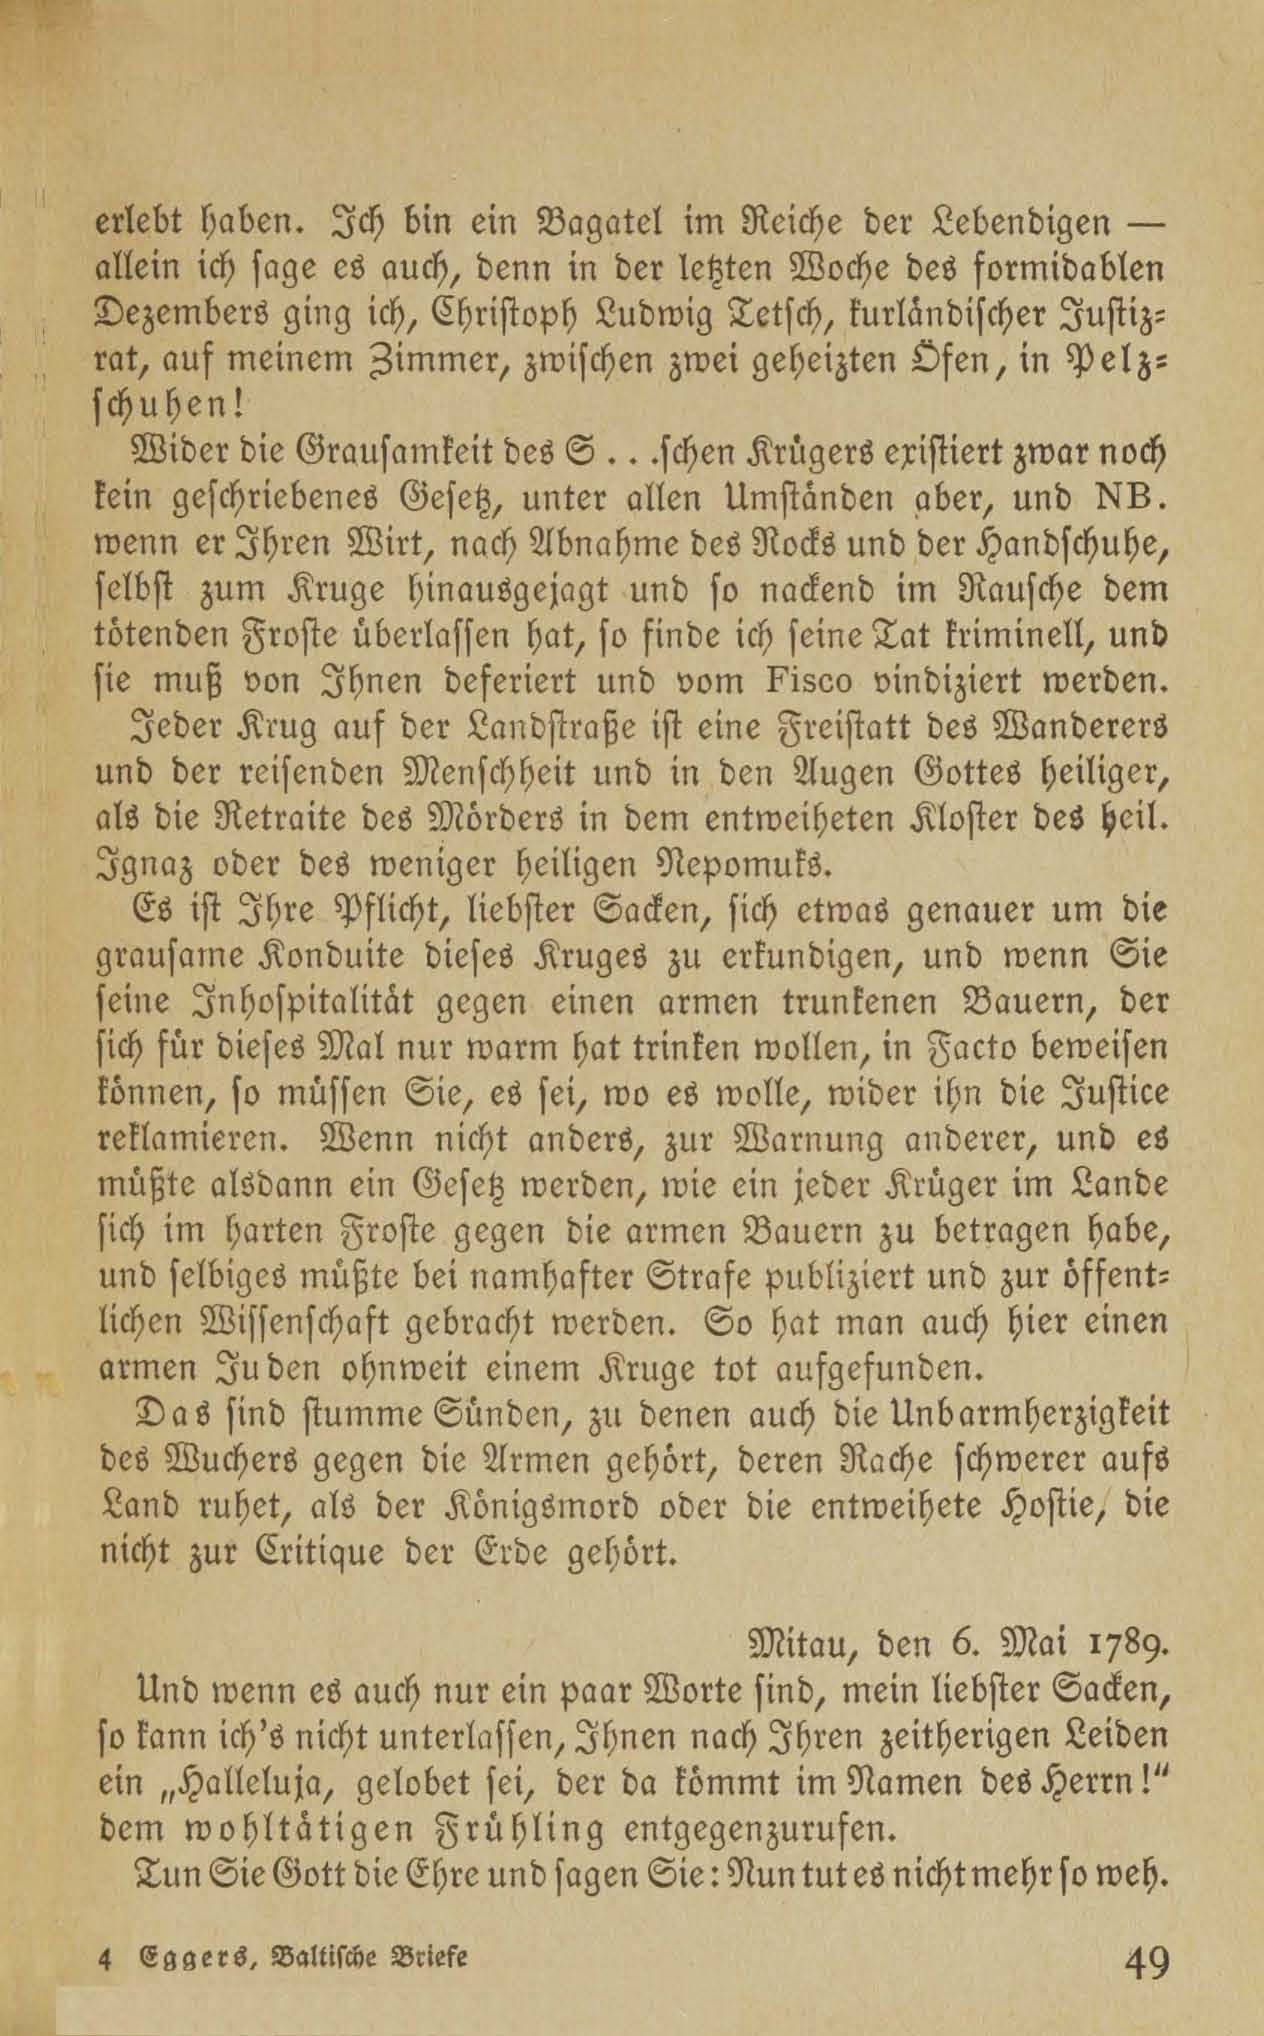 Baltische Briefe aus zwei Jahrhunderten (1917 ?) | 44. (49) Main body of text